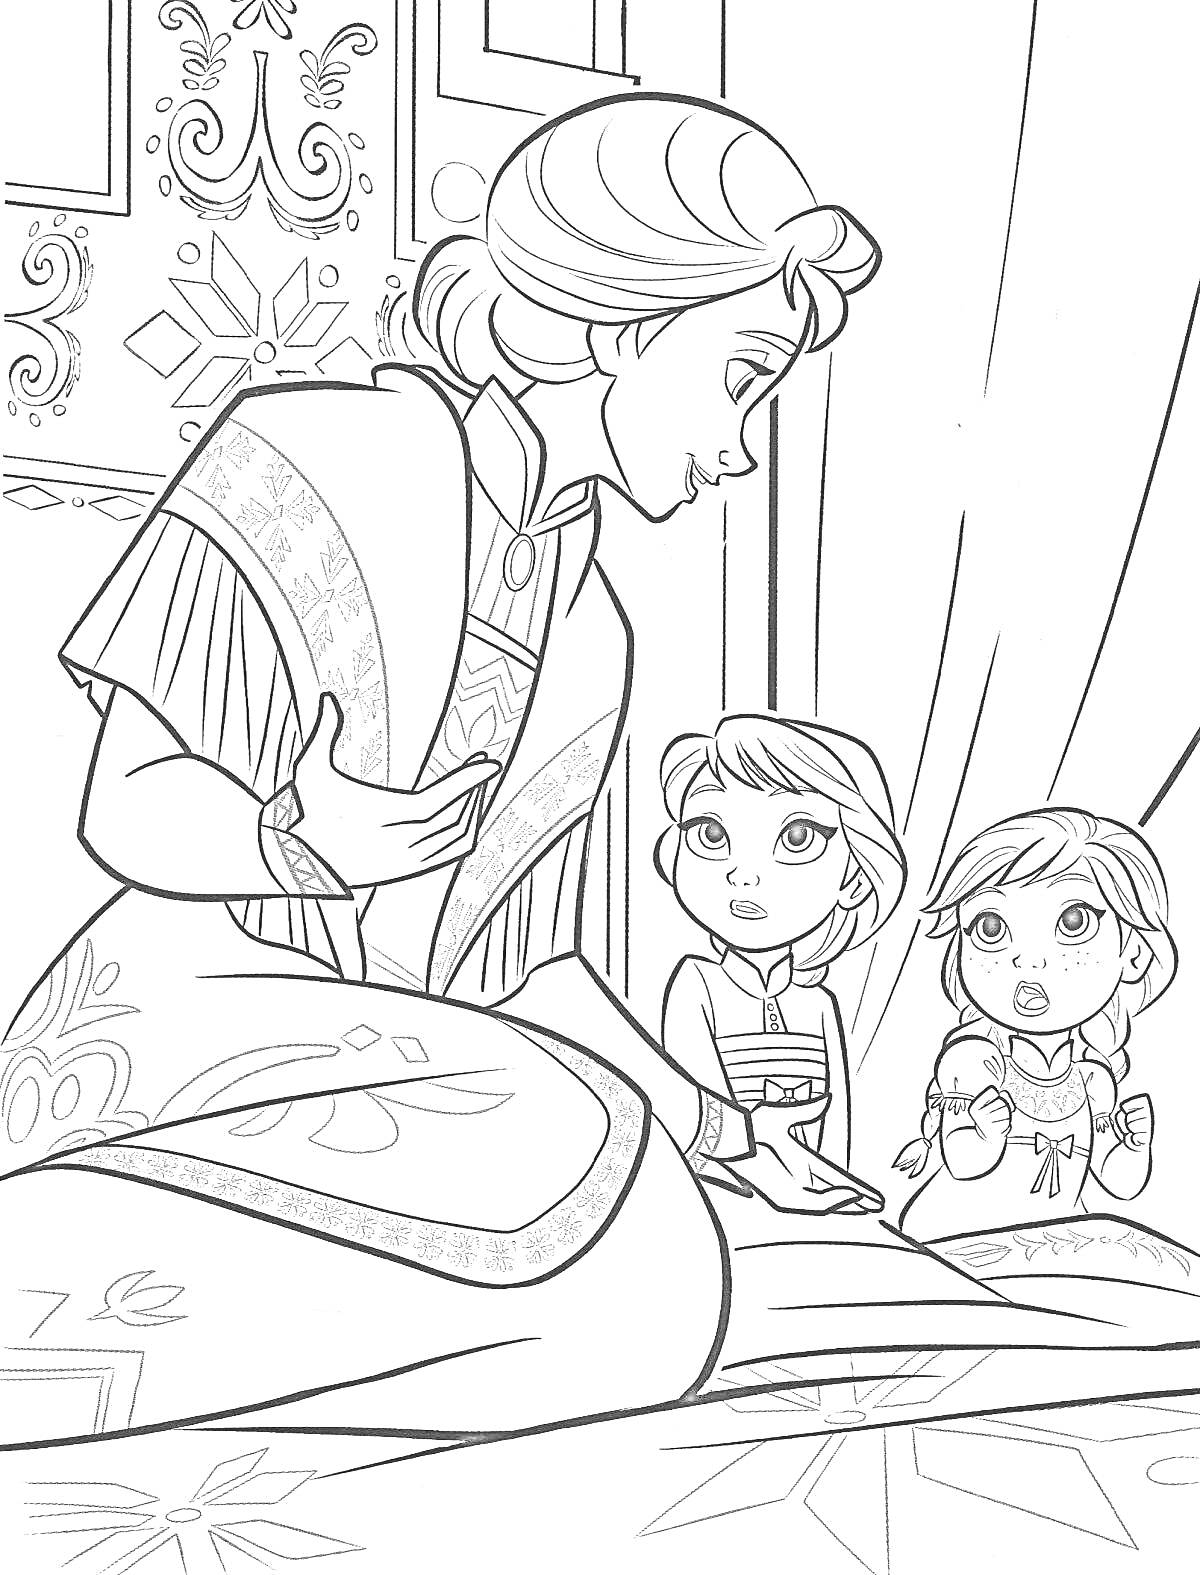 Раскраска Мать рассказывает маленьким Анне и Эльзе историю в помещении с занавесками и снежинками на стене